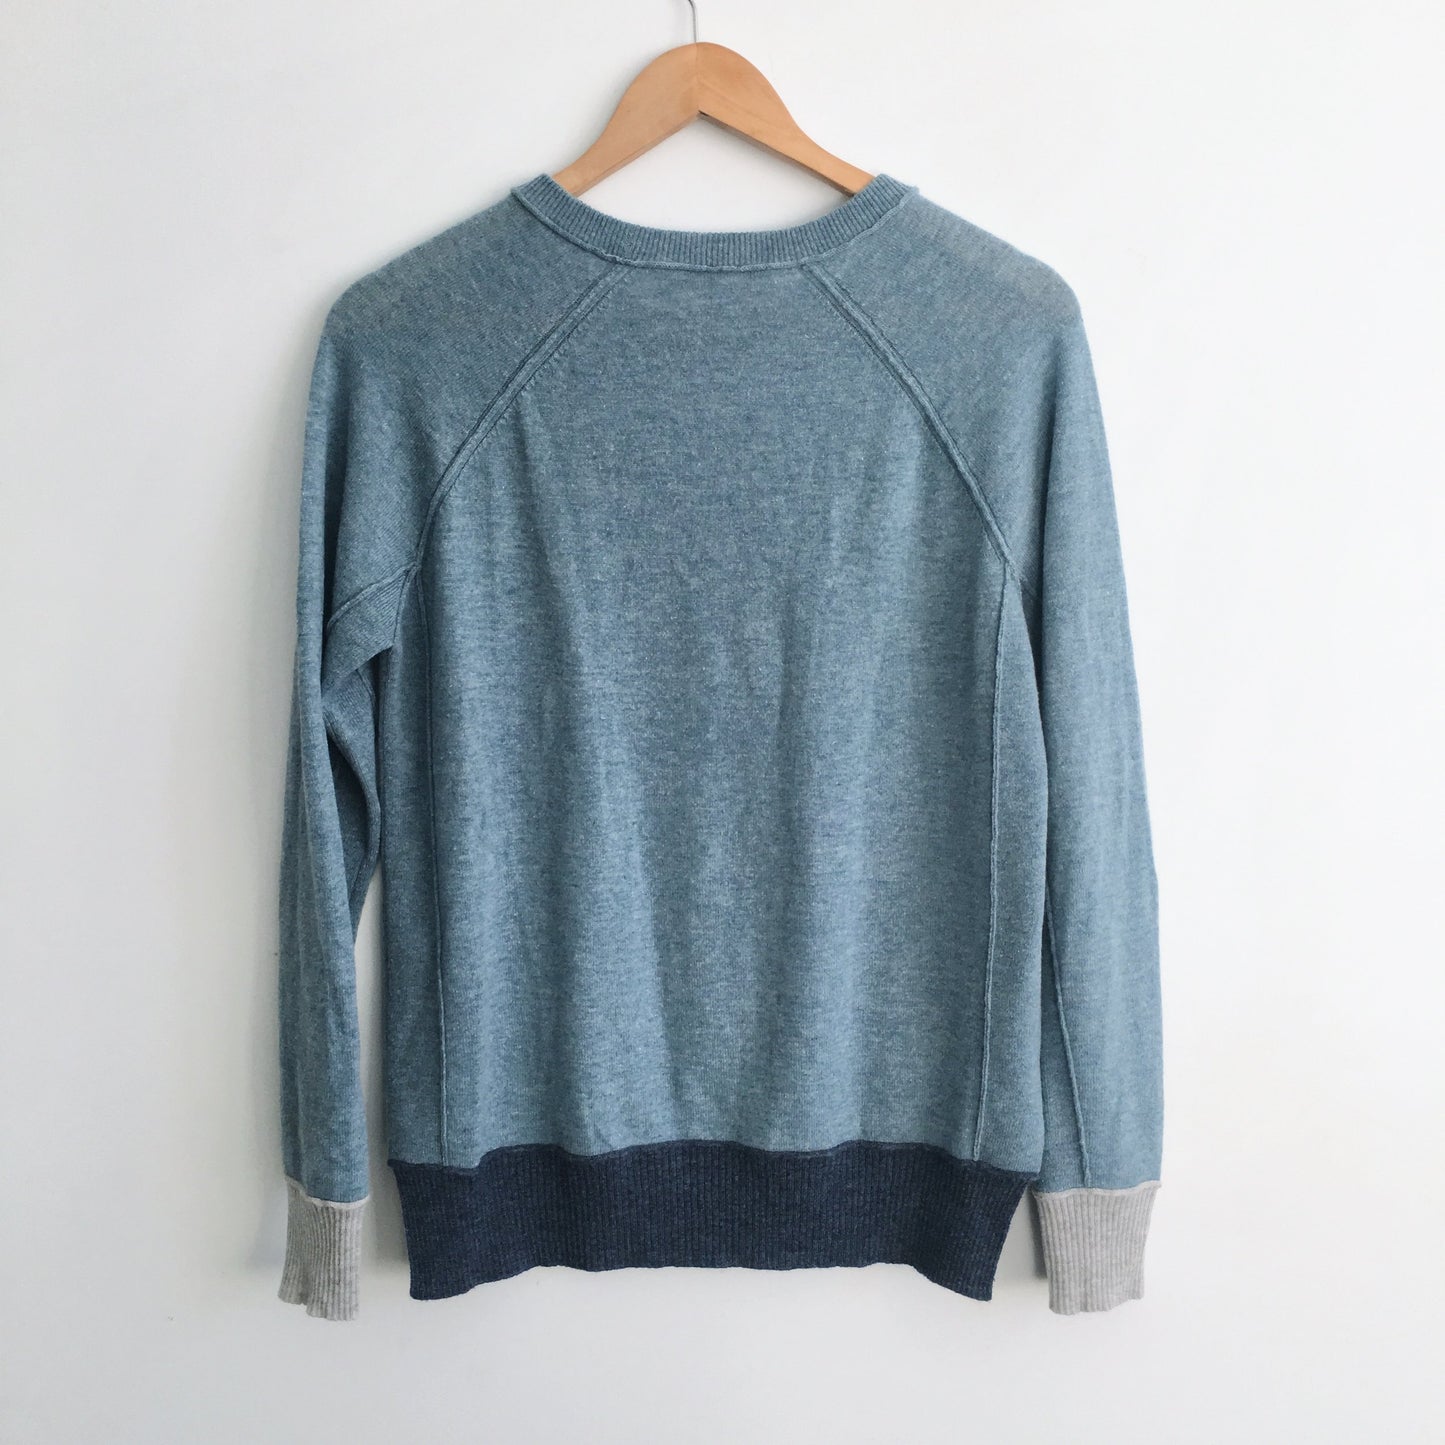 Autumn Cashmere Crewneck Sweater - size Medium